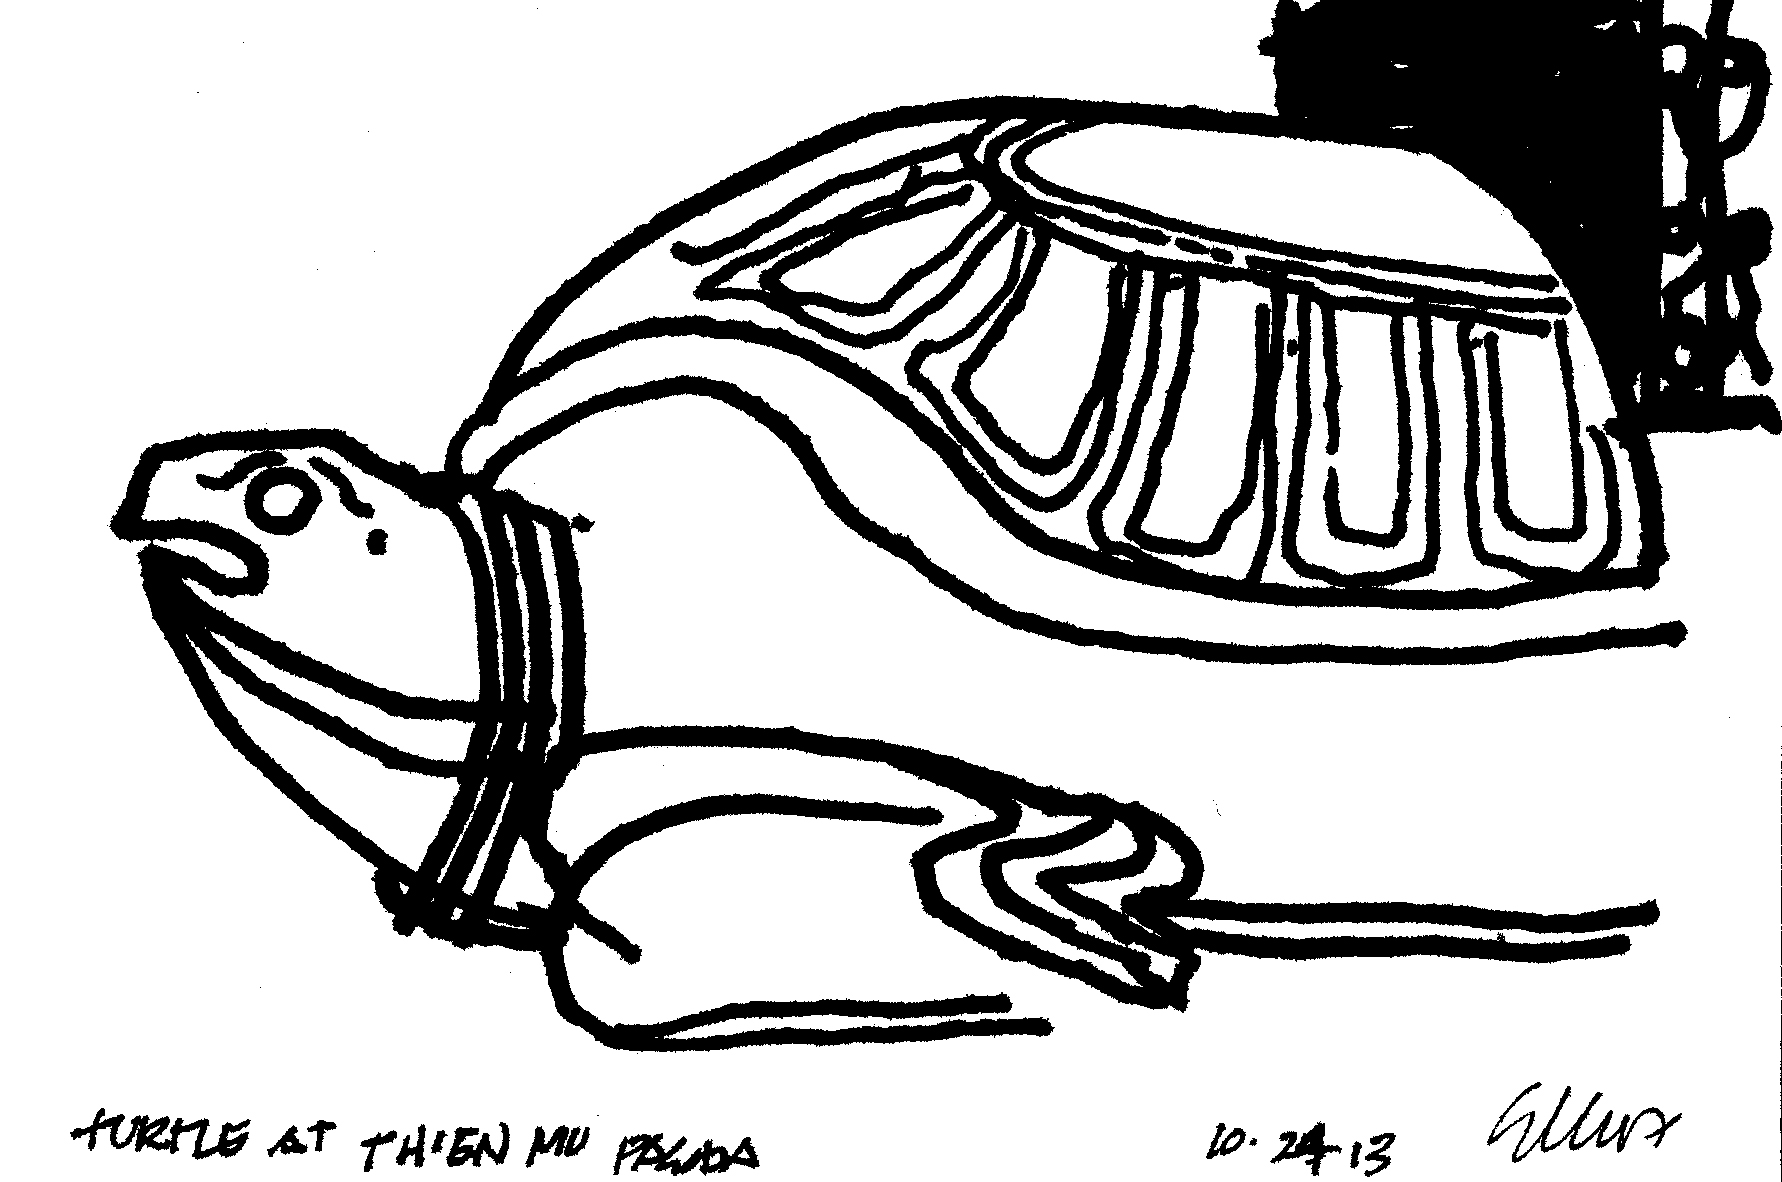  turtle at thein mu pawda 10.24.13 